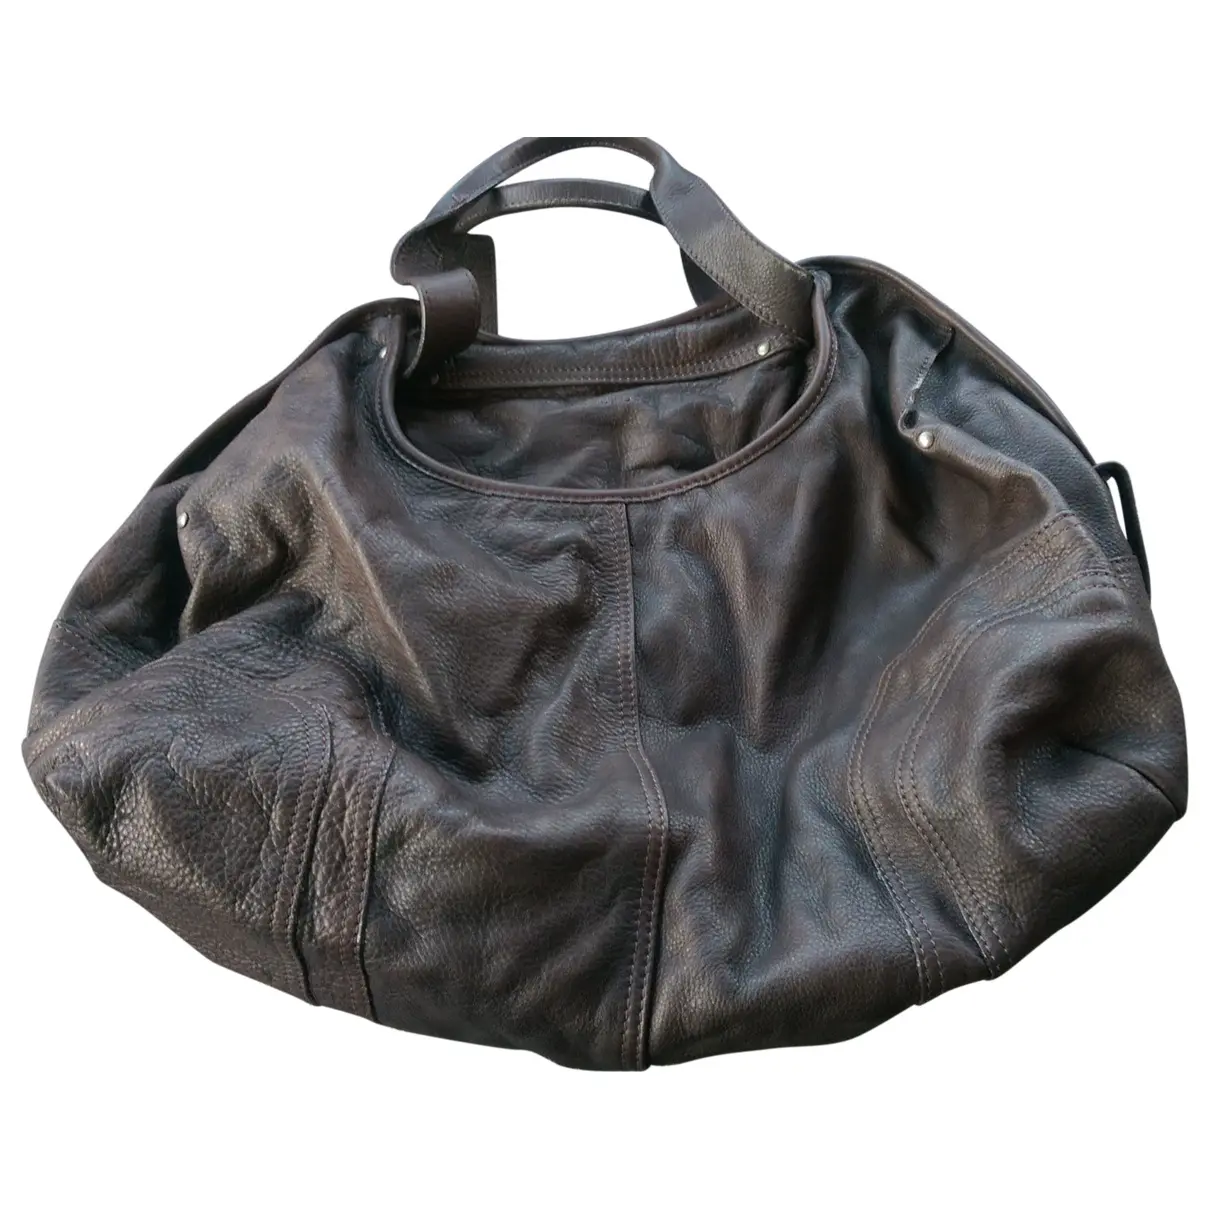 Leather handbag Aridza Bross